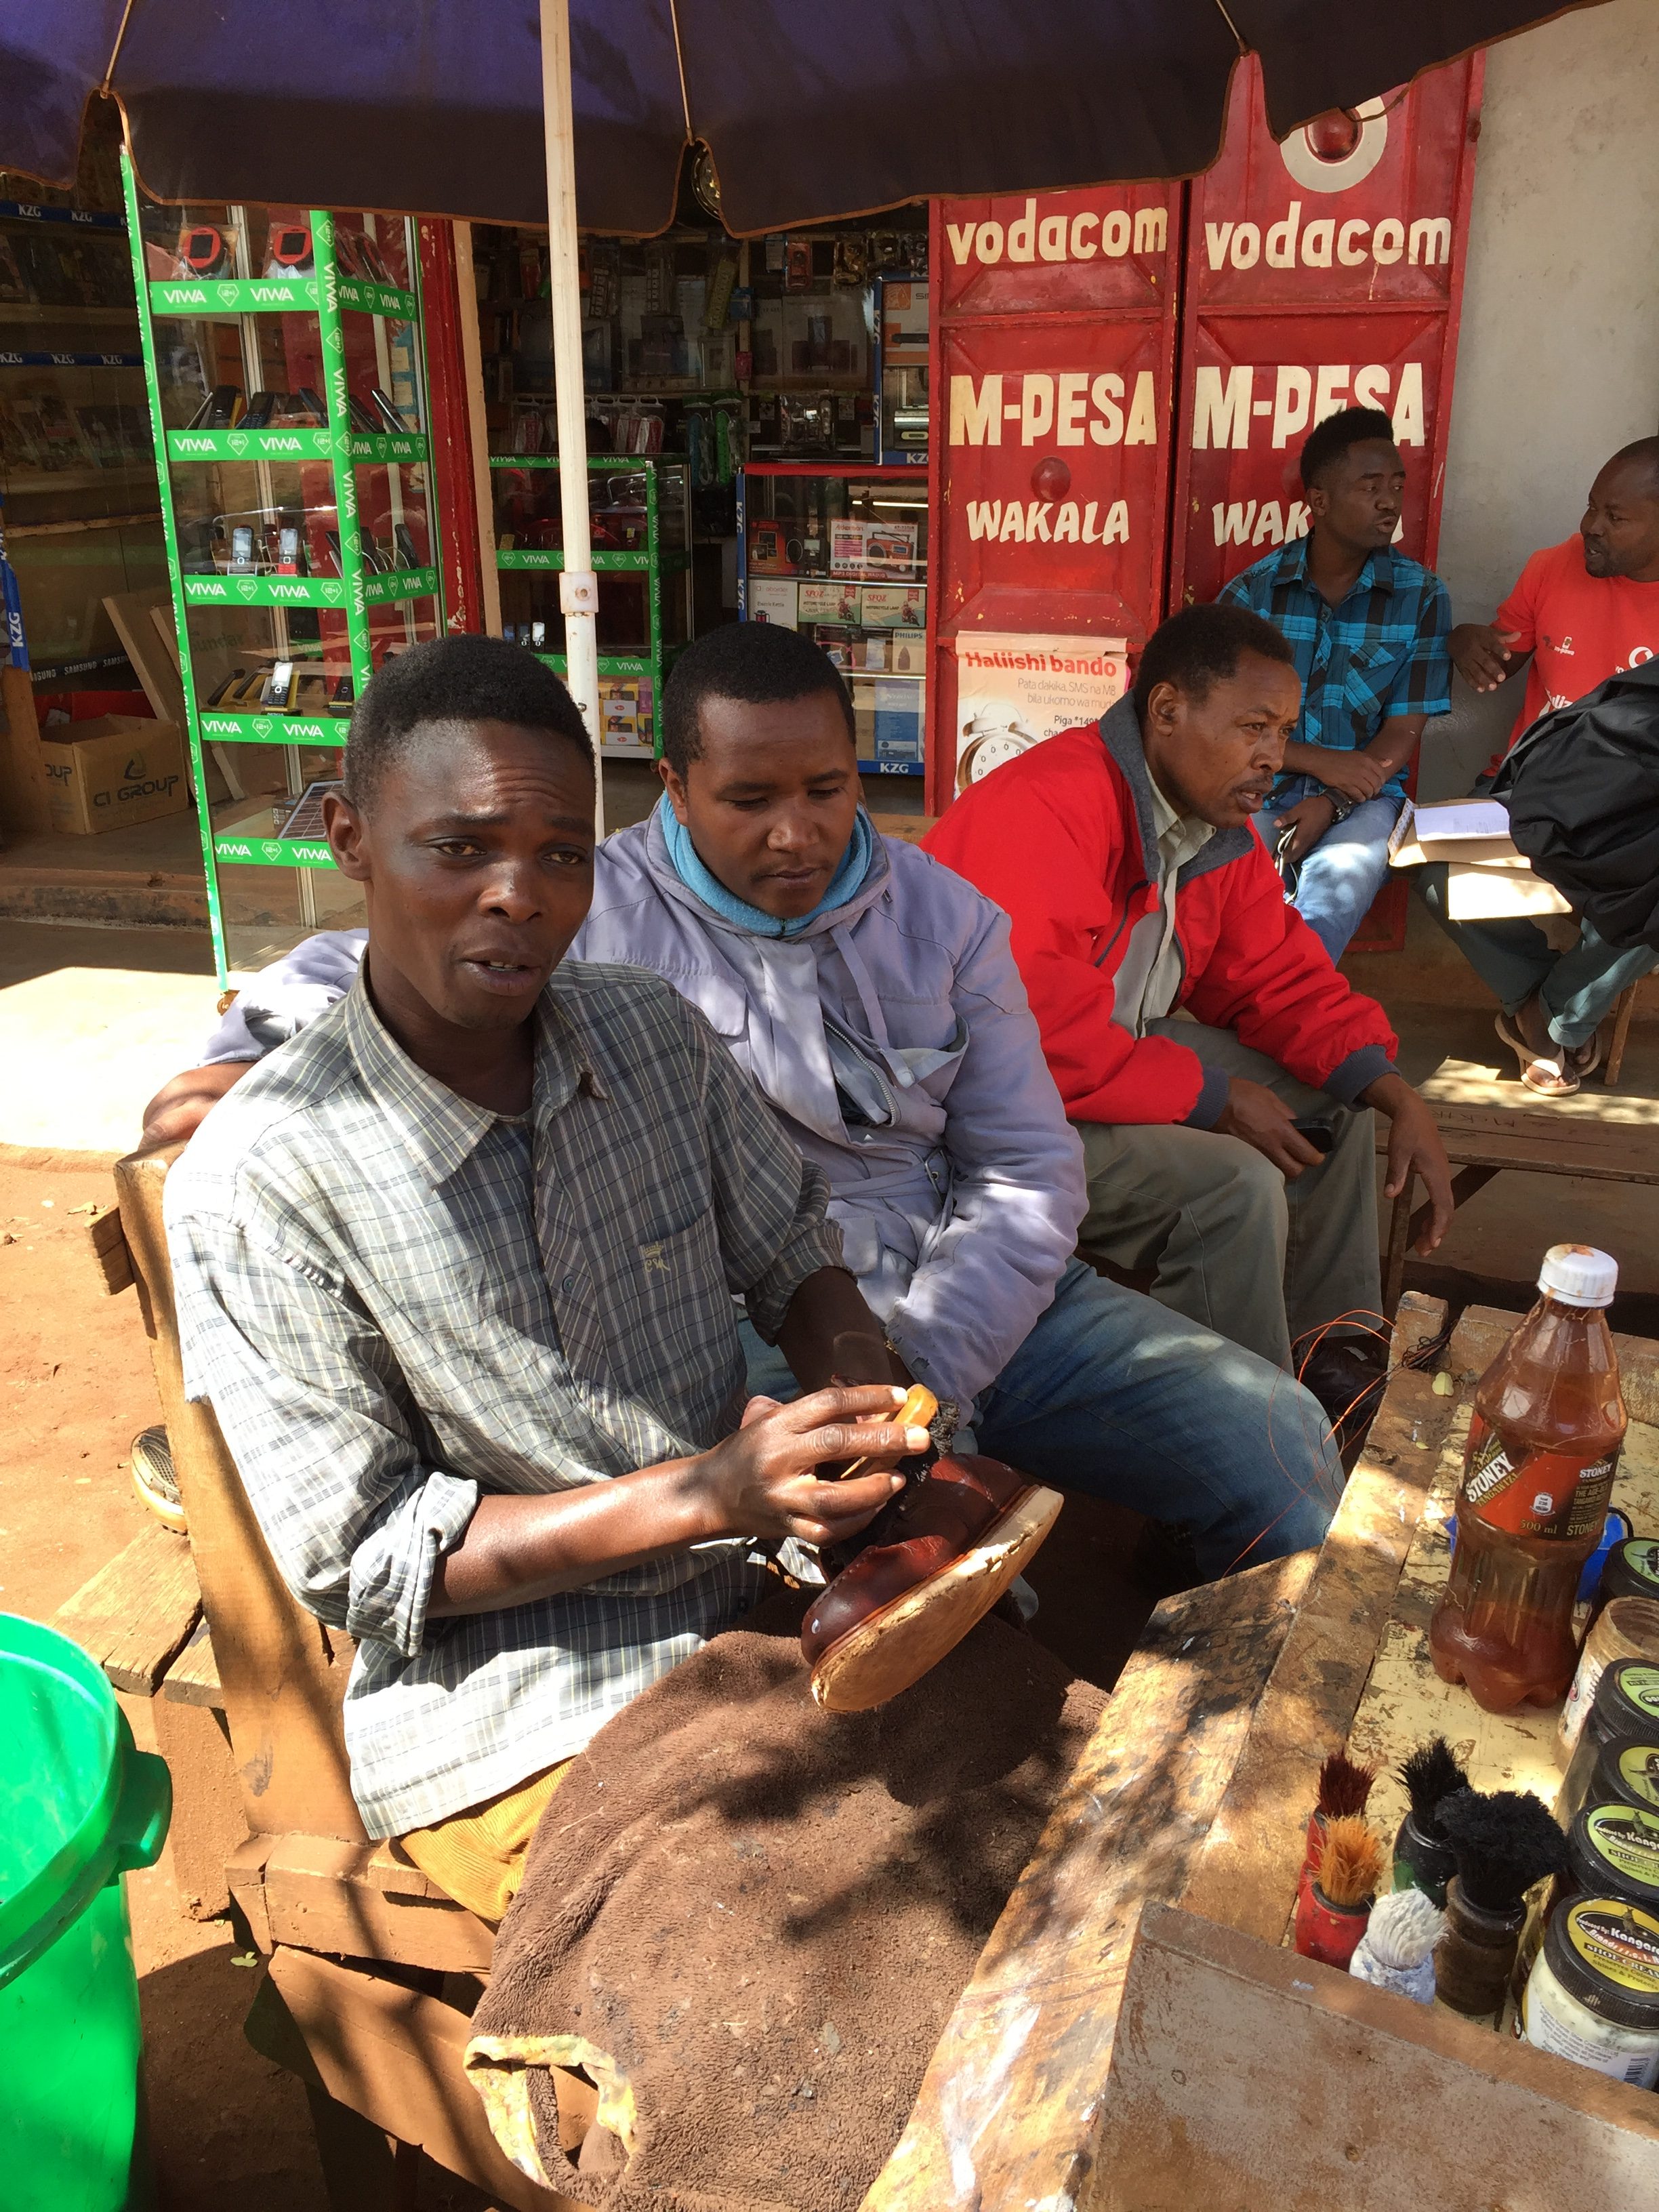 Locals in Karatu Tanzania